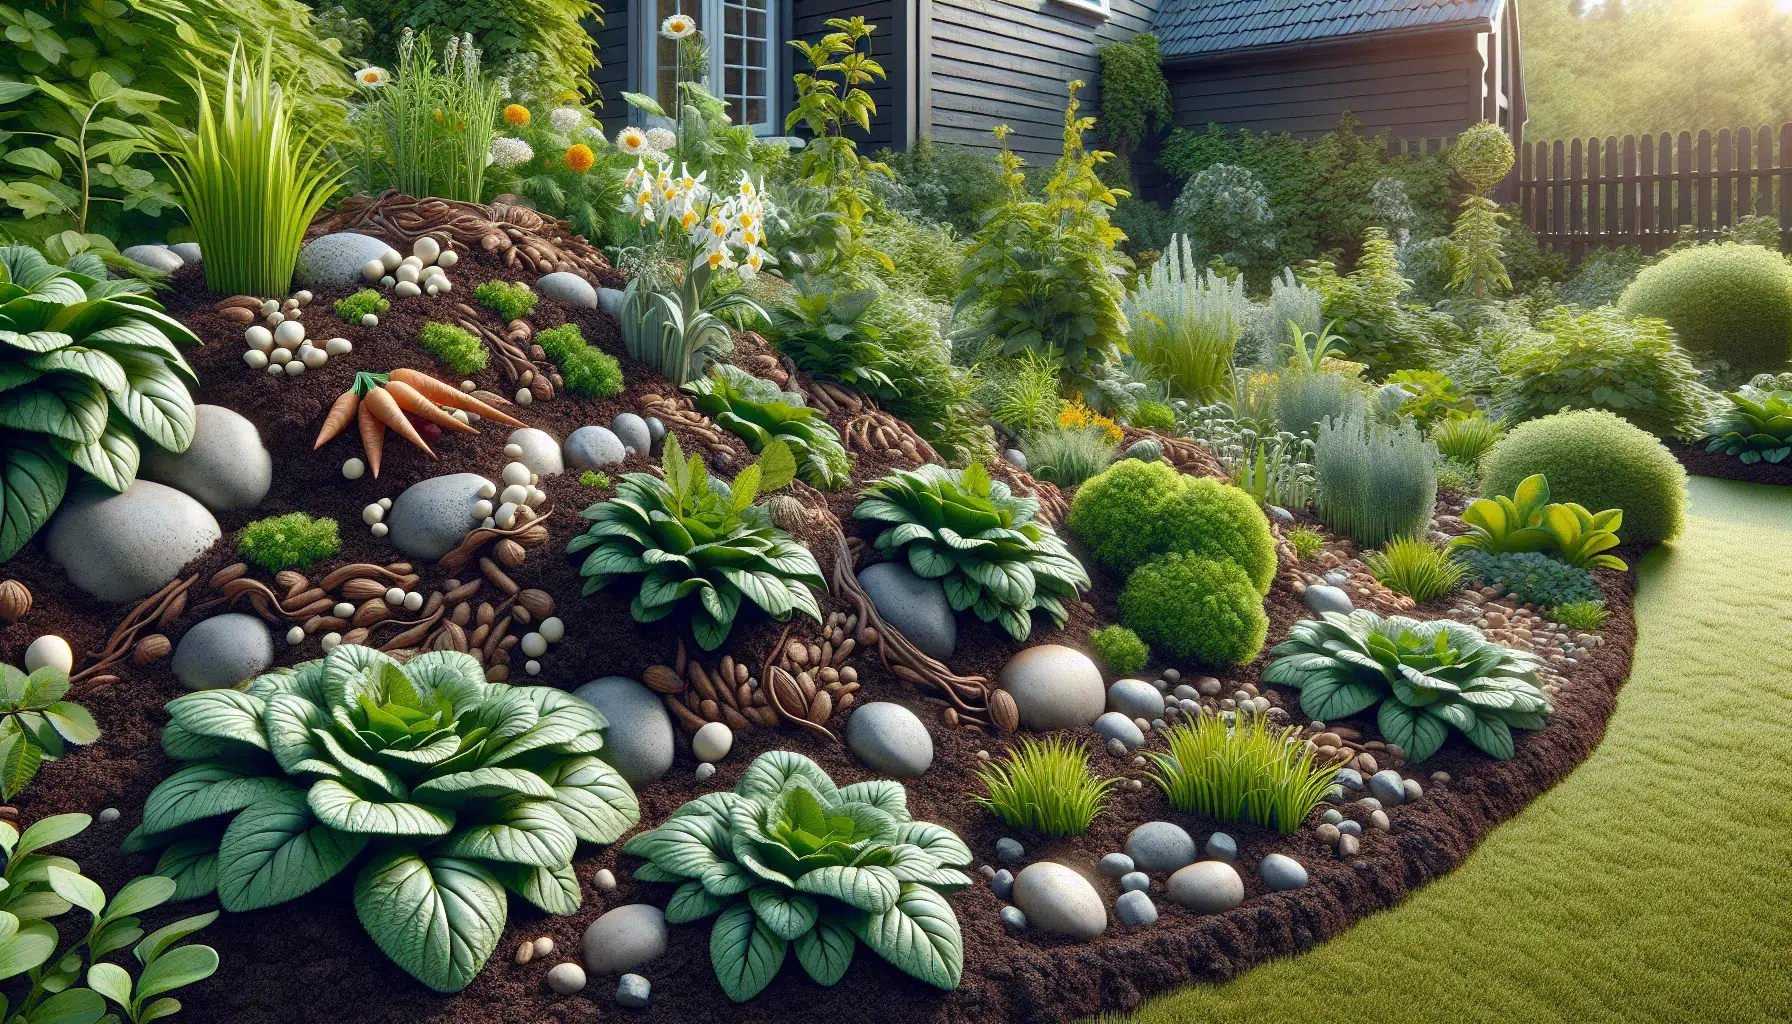 Imagen ilustrativa de un jardín cubierto de mantillo orgánico, una técnica de mulching que conserva la humedad y nutre el suelo.